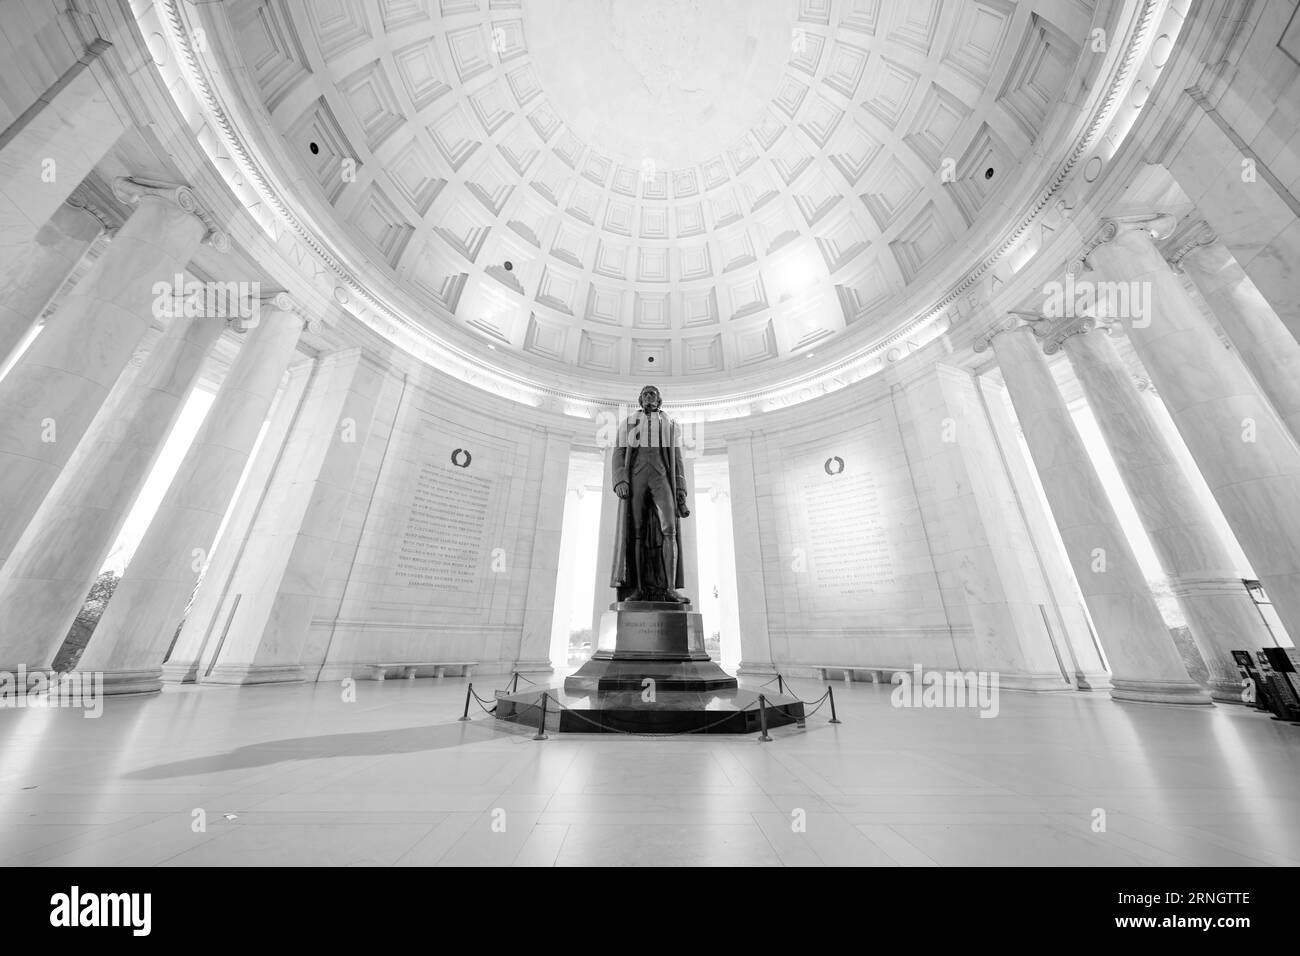 WASHINGTON DC, Stati Uniti - il Jefferson Memorial si erge come un monumento iconico lungo il Tidal Basin, dedicato al terzo presidente degli Stati Uniti, Thomas Jefferson. Simboleggia il rispetto e l'ammirazione della nazione per il principale autore della dichiarazione di indipendenza e la sua visione della democrazia. Foto Stock